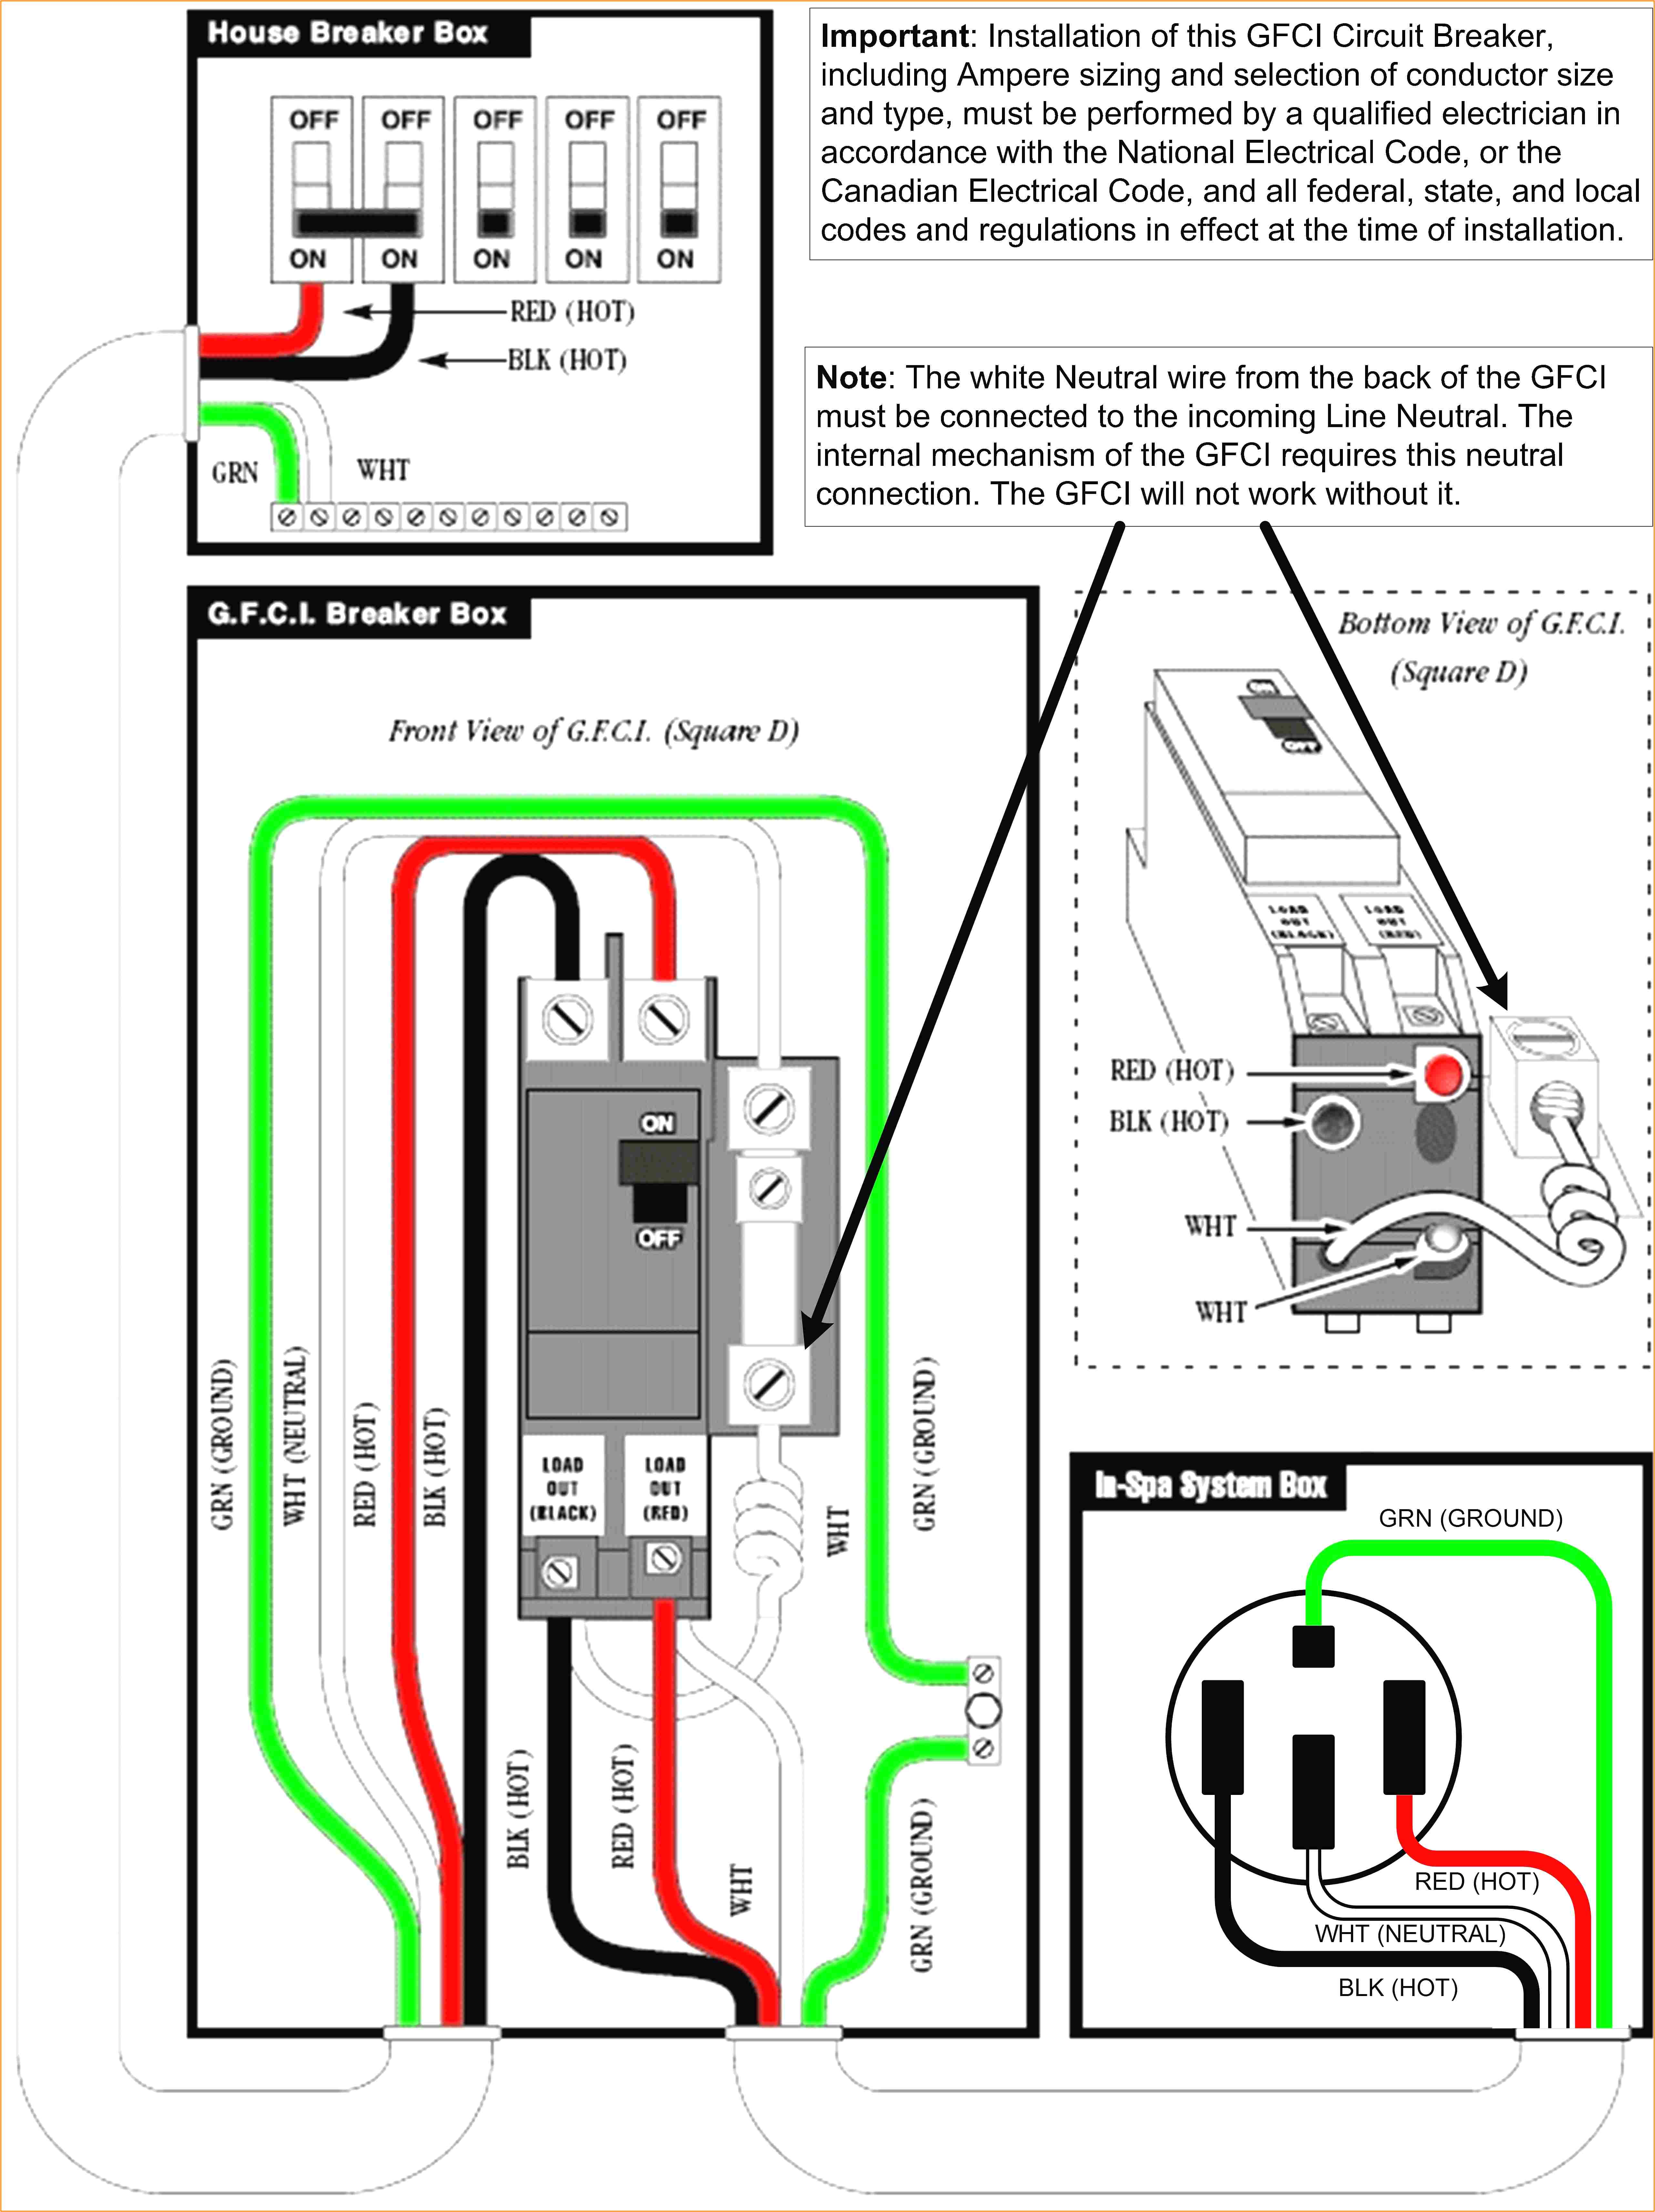 wiring a gfci schematic diagram manual e book wiring diagram for a gfci breaker wiring diagram